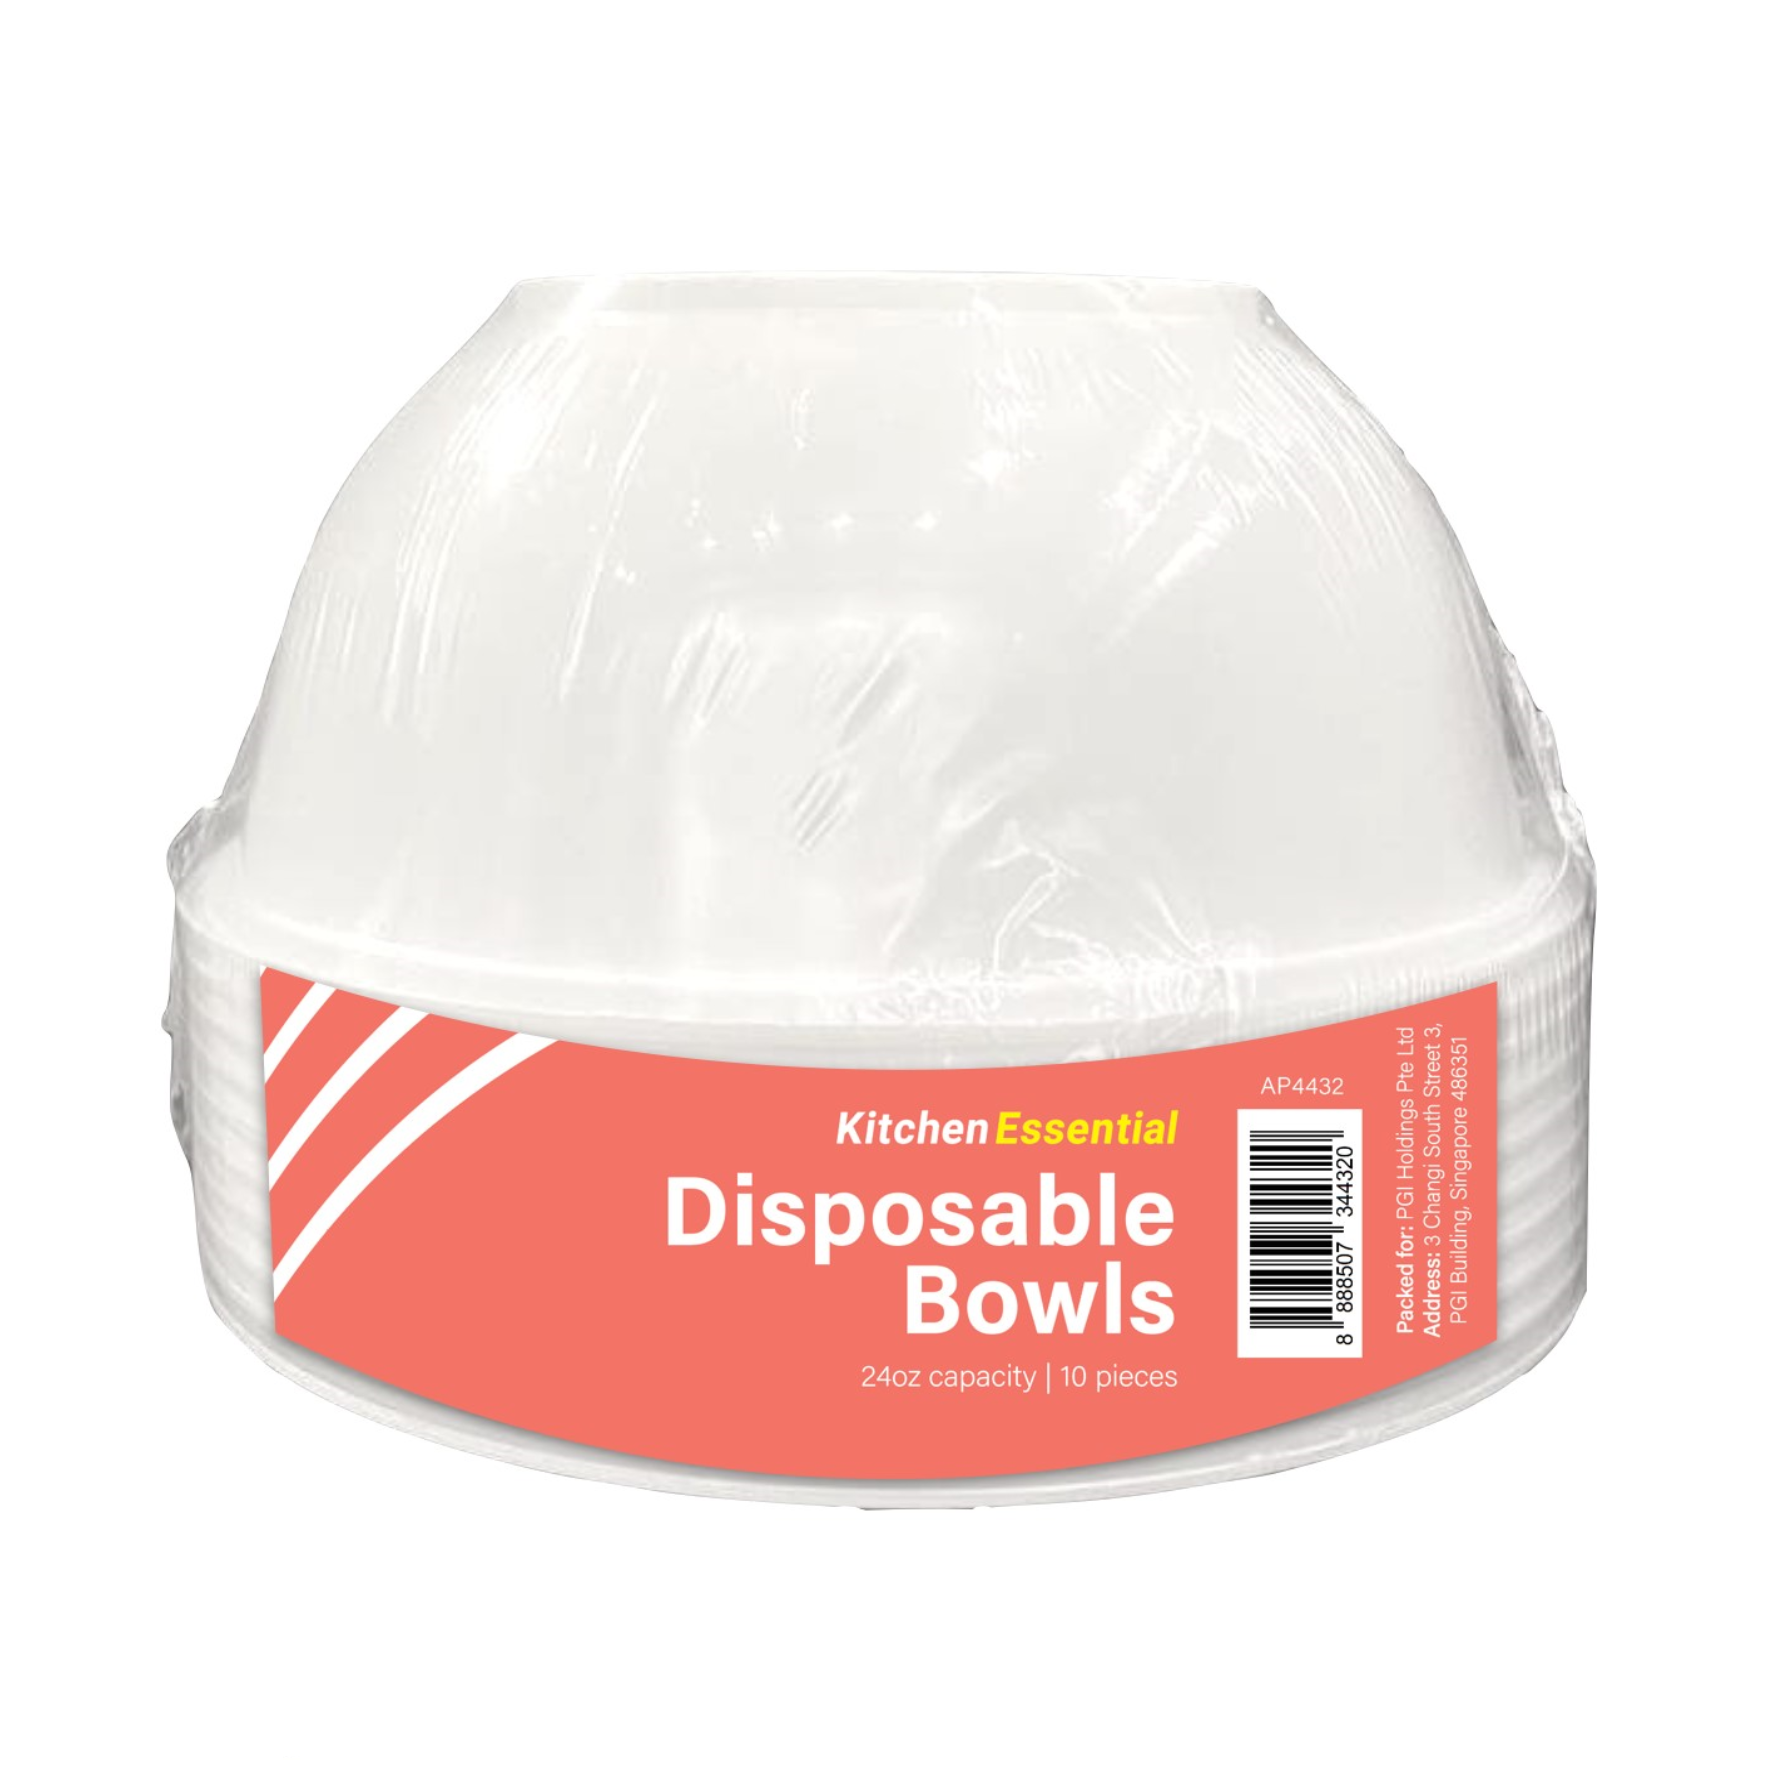 KITCHEN ESSENTIAL 24 OZ Disposable Bowls 10PC/PACK